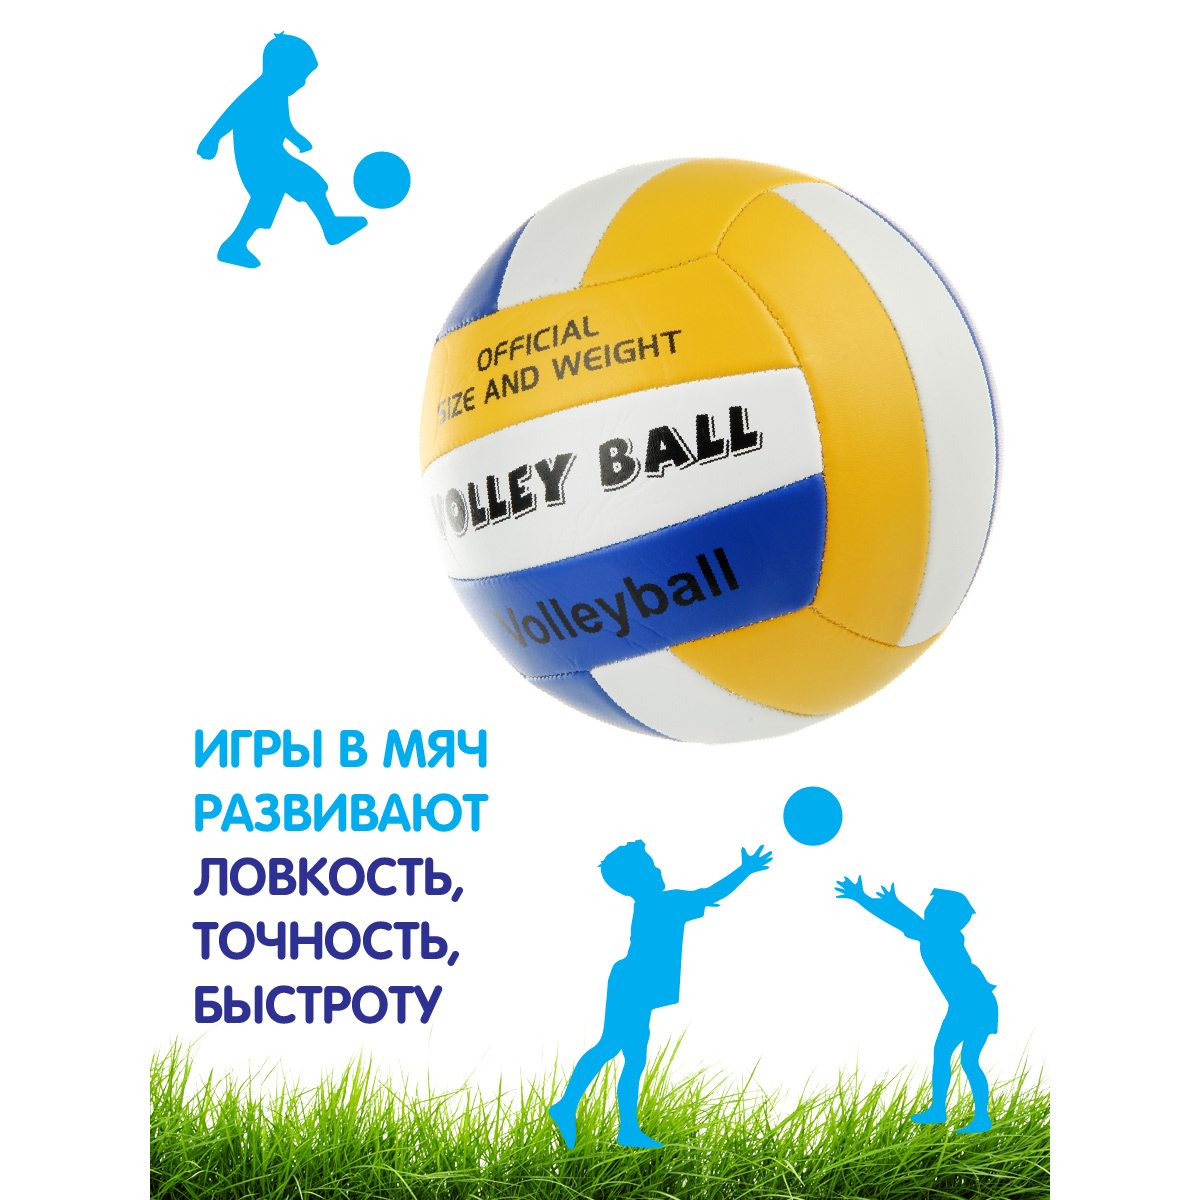 Мяч Veld Co волейбольный 21 см - фото 3